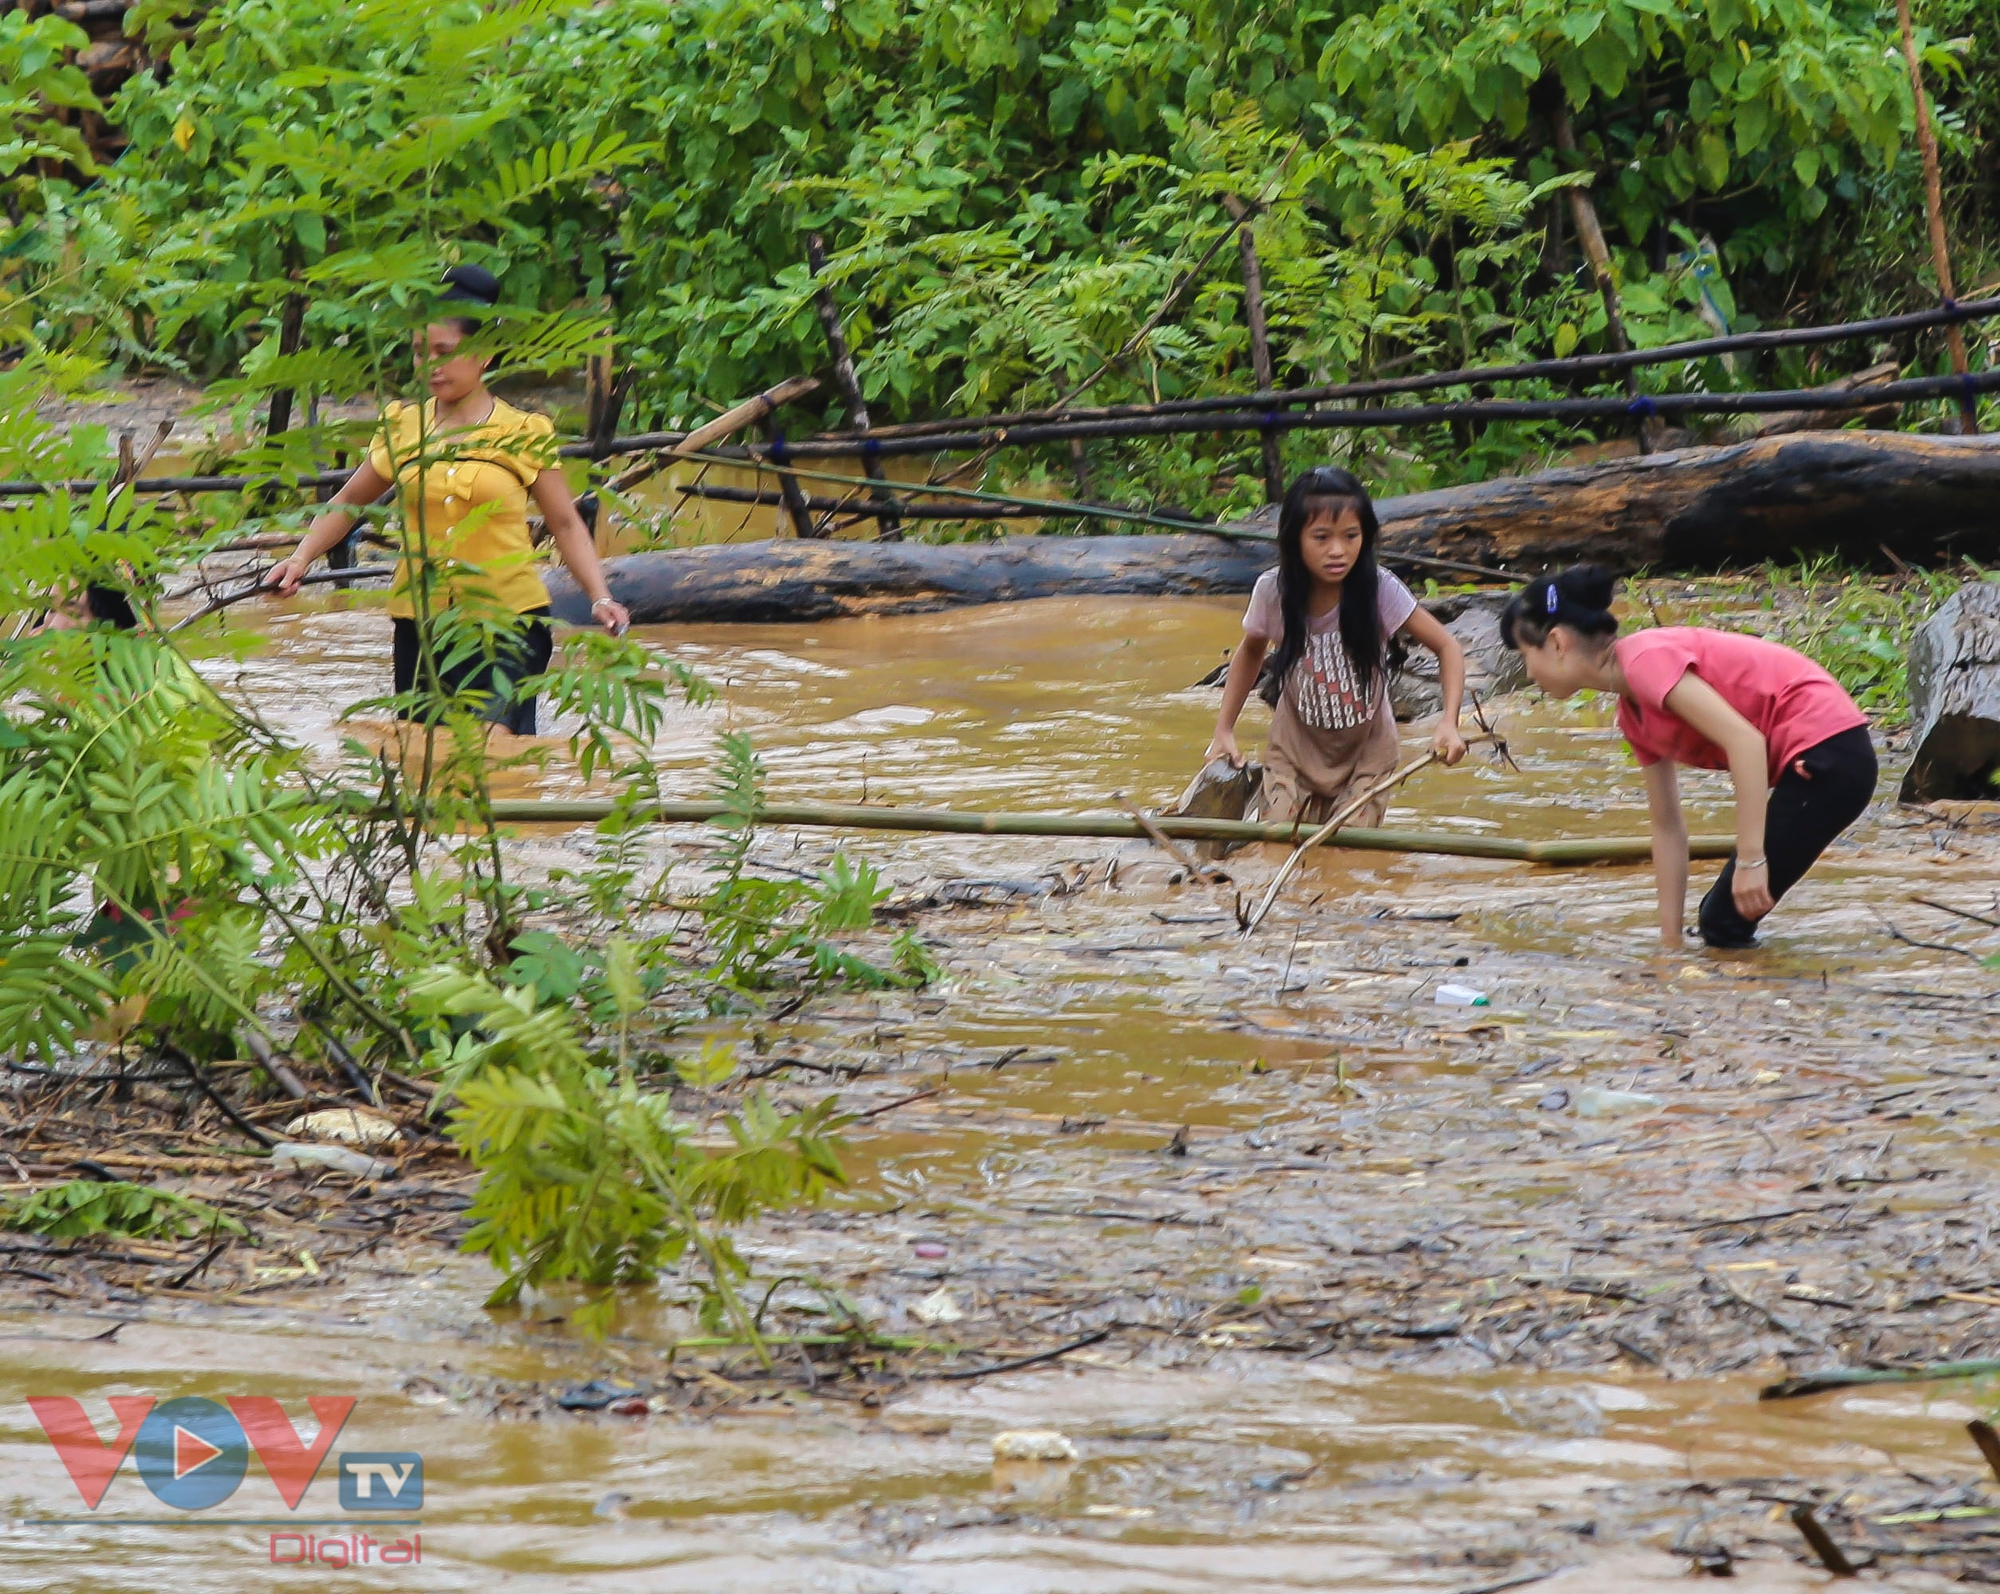 Mặc nước lũ cuồn cuộn, người dân Điện Biên vẫn đua nhau đi vớt củi, bắt cá- Ảnh 3.